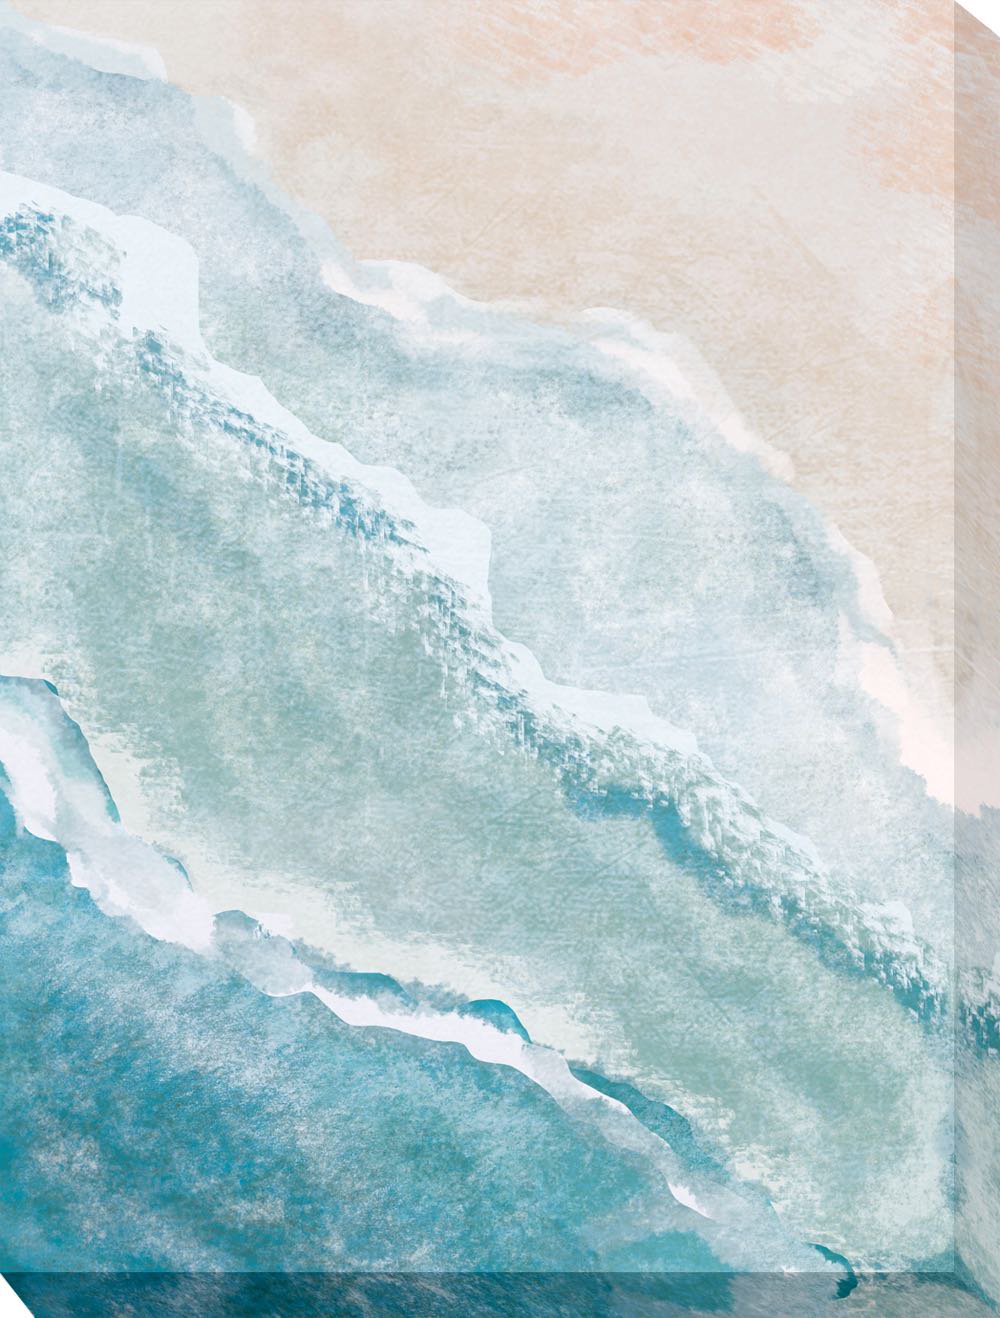 絵画 アートパネル 海 ビーチ 波 壁飾り 抽象画 プレゼント 壁掛け 